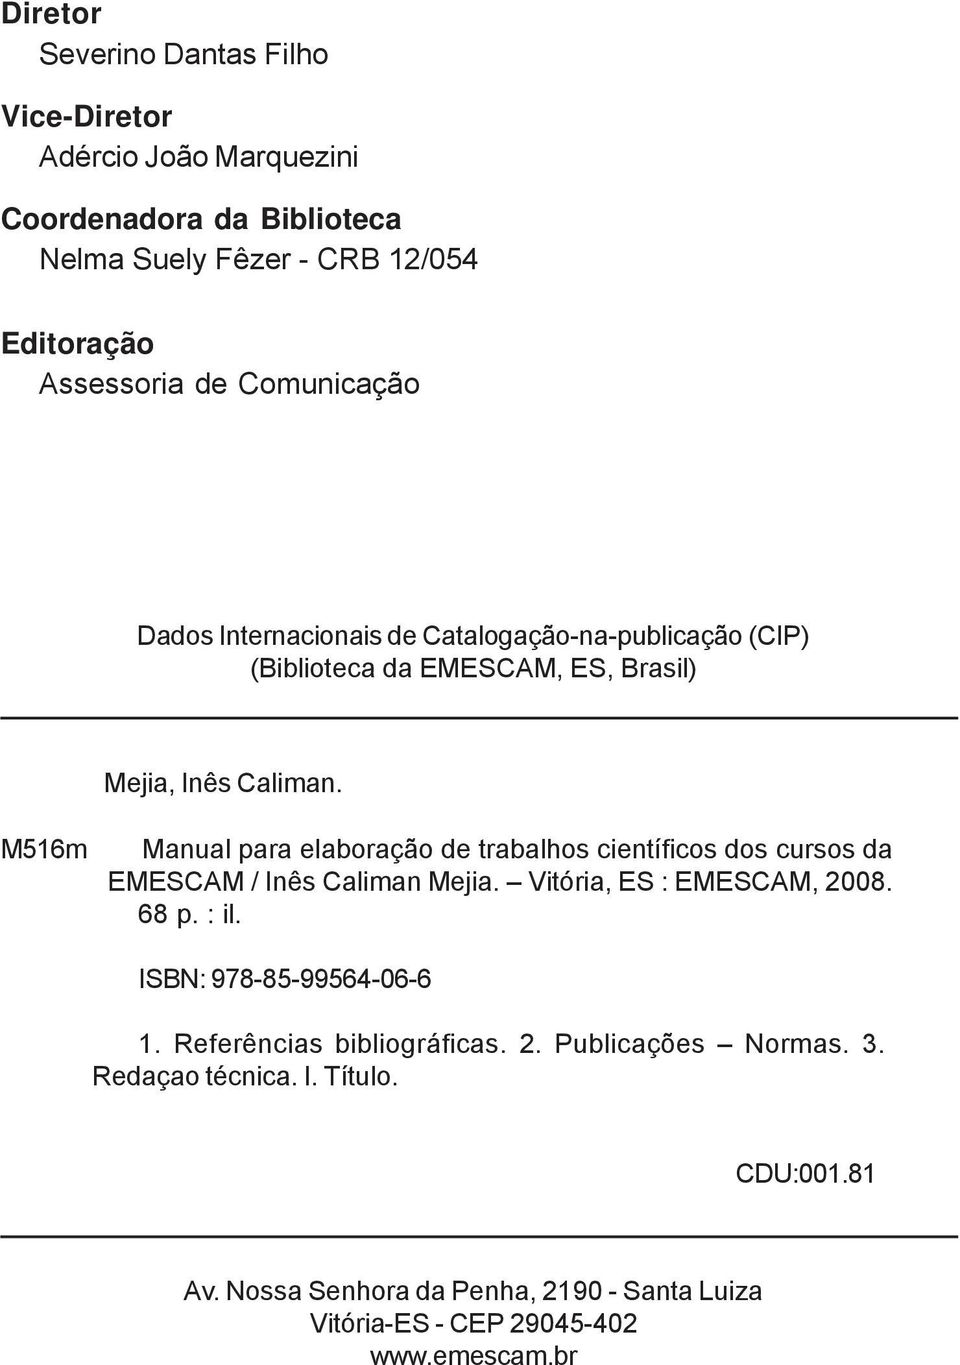 M516m Manual para elaboração de trabalhos científicos dos cursos da EMESCAM / Inês Caliman Mejia. Vitória, ES : EMESCAM, 2008. 68 p. : il.